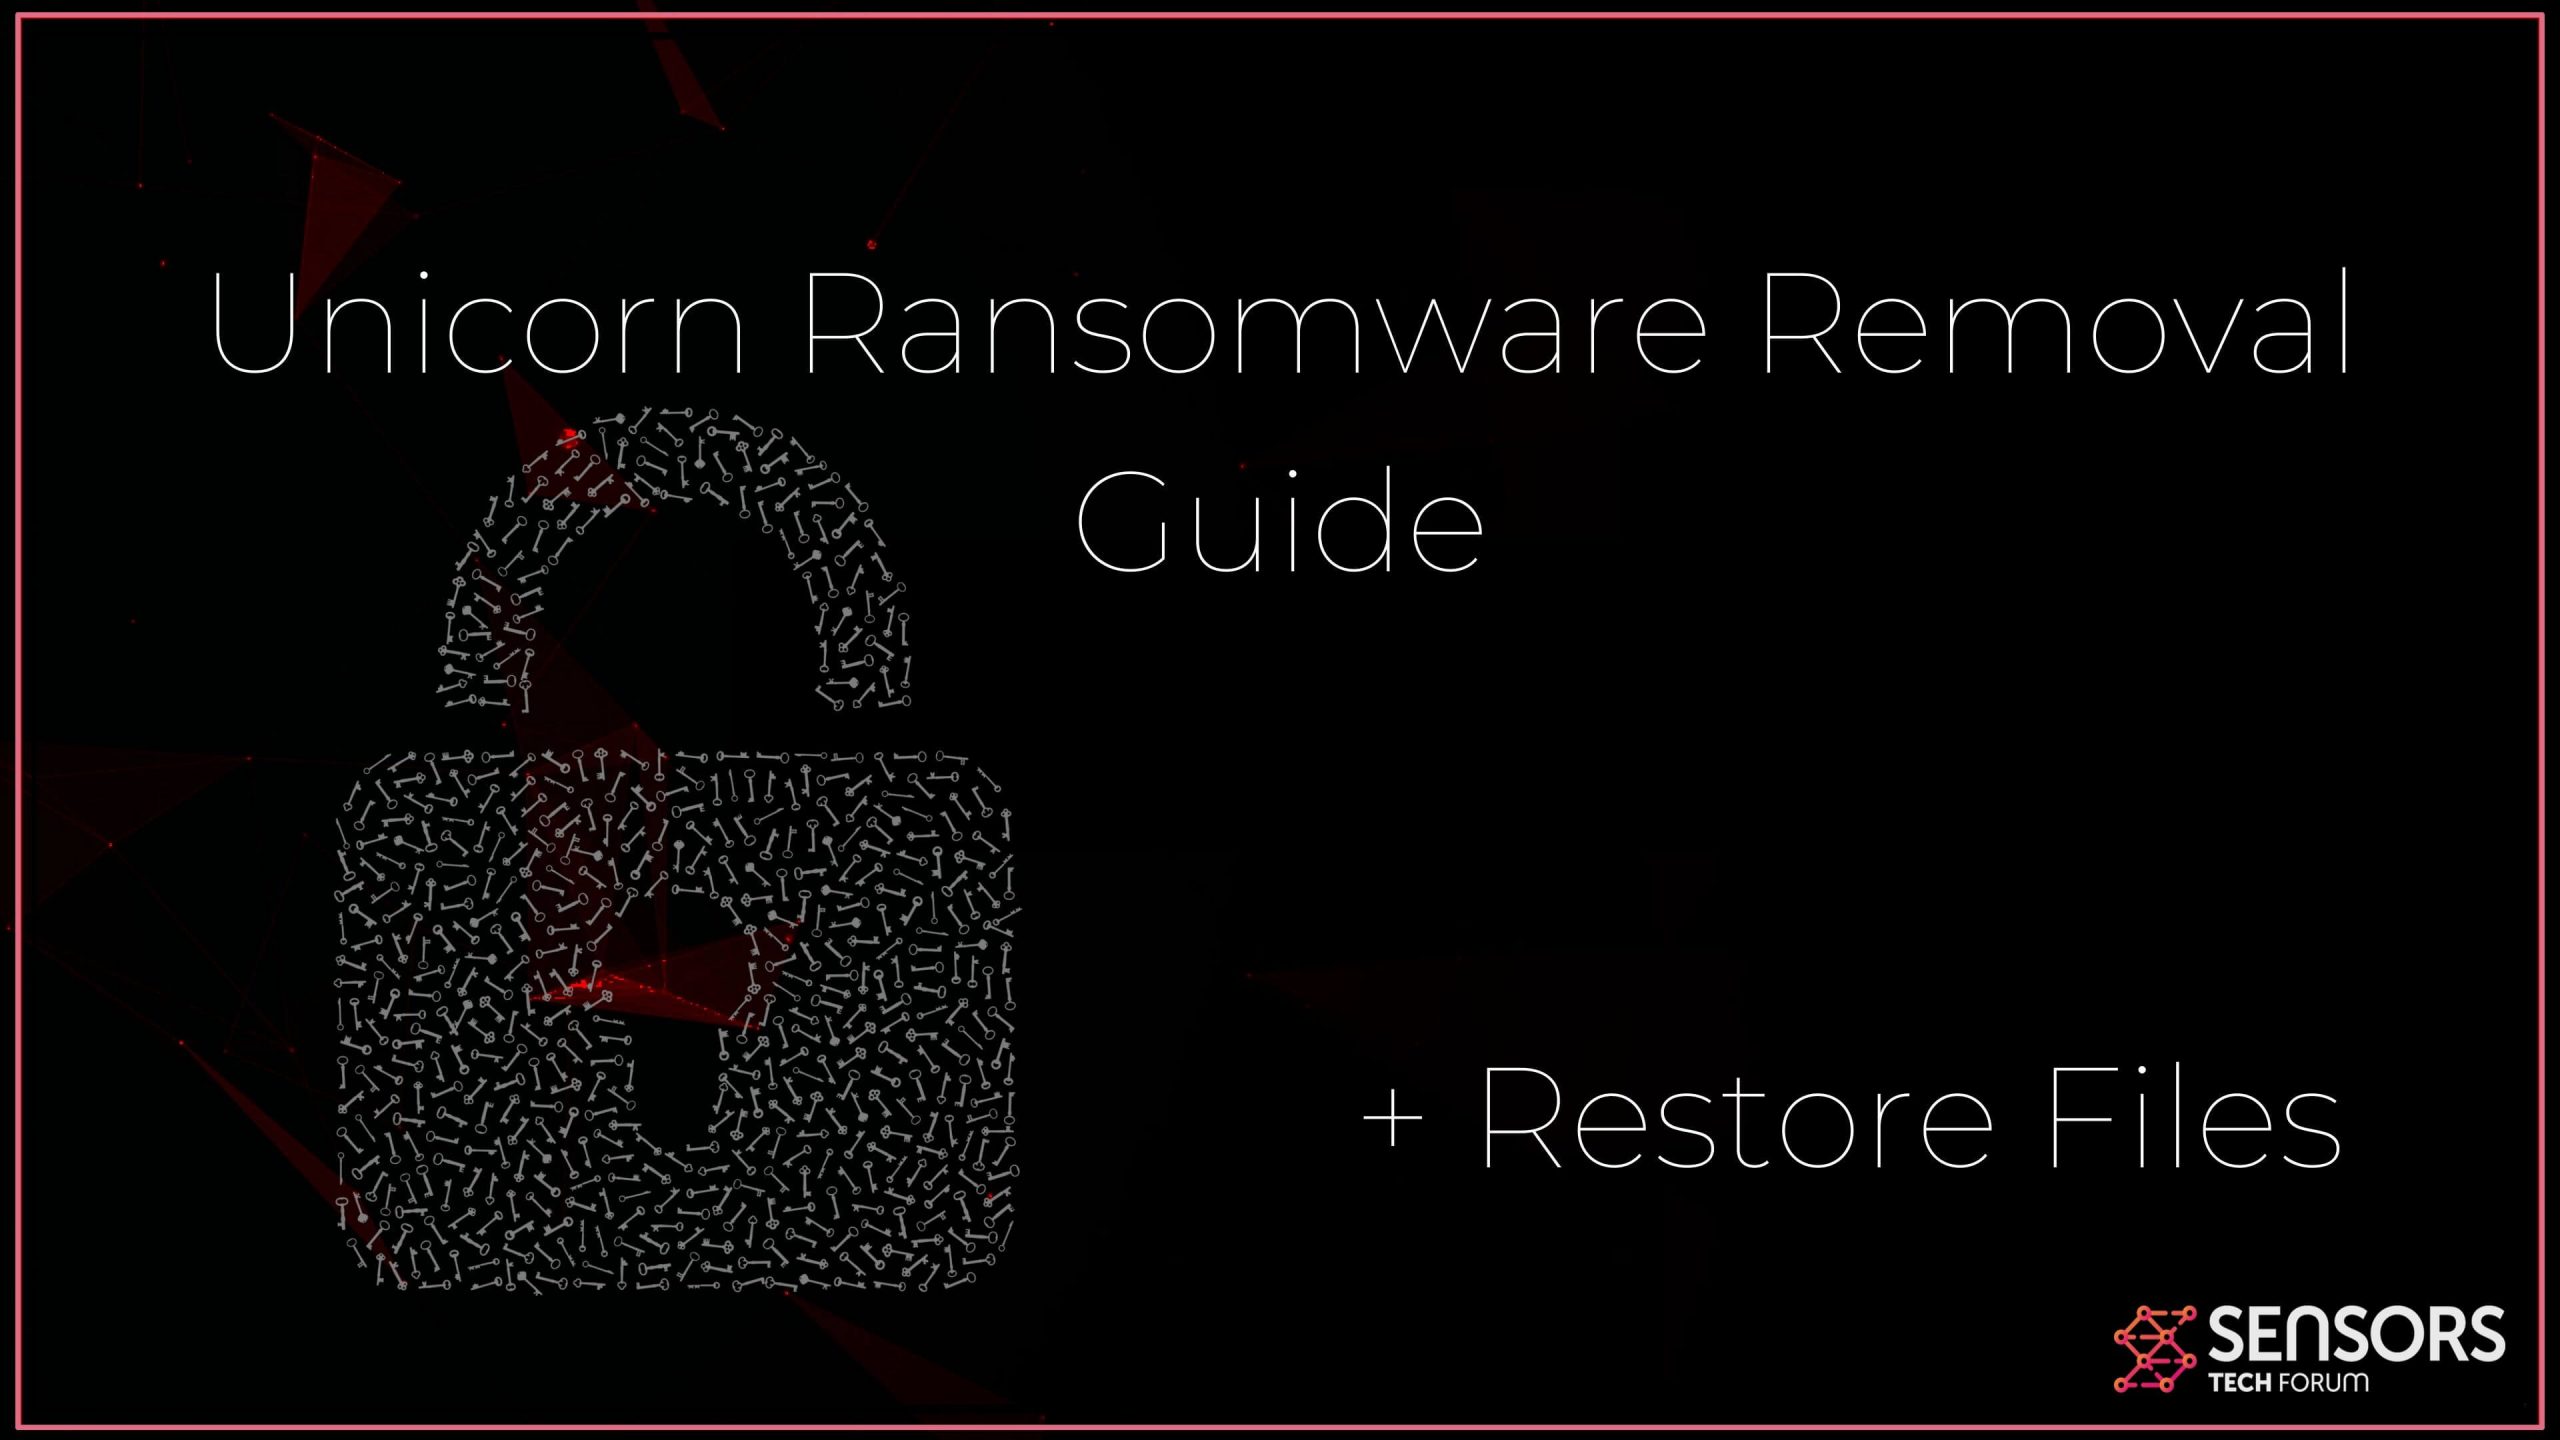 Remove Unicorn Ransomware and Restore Files